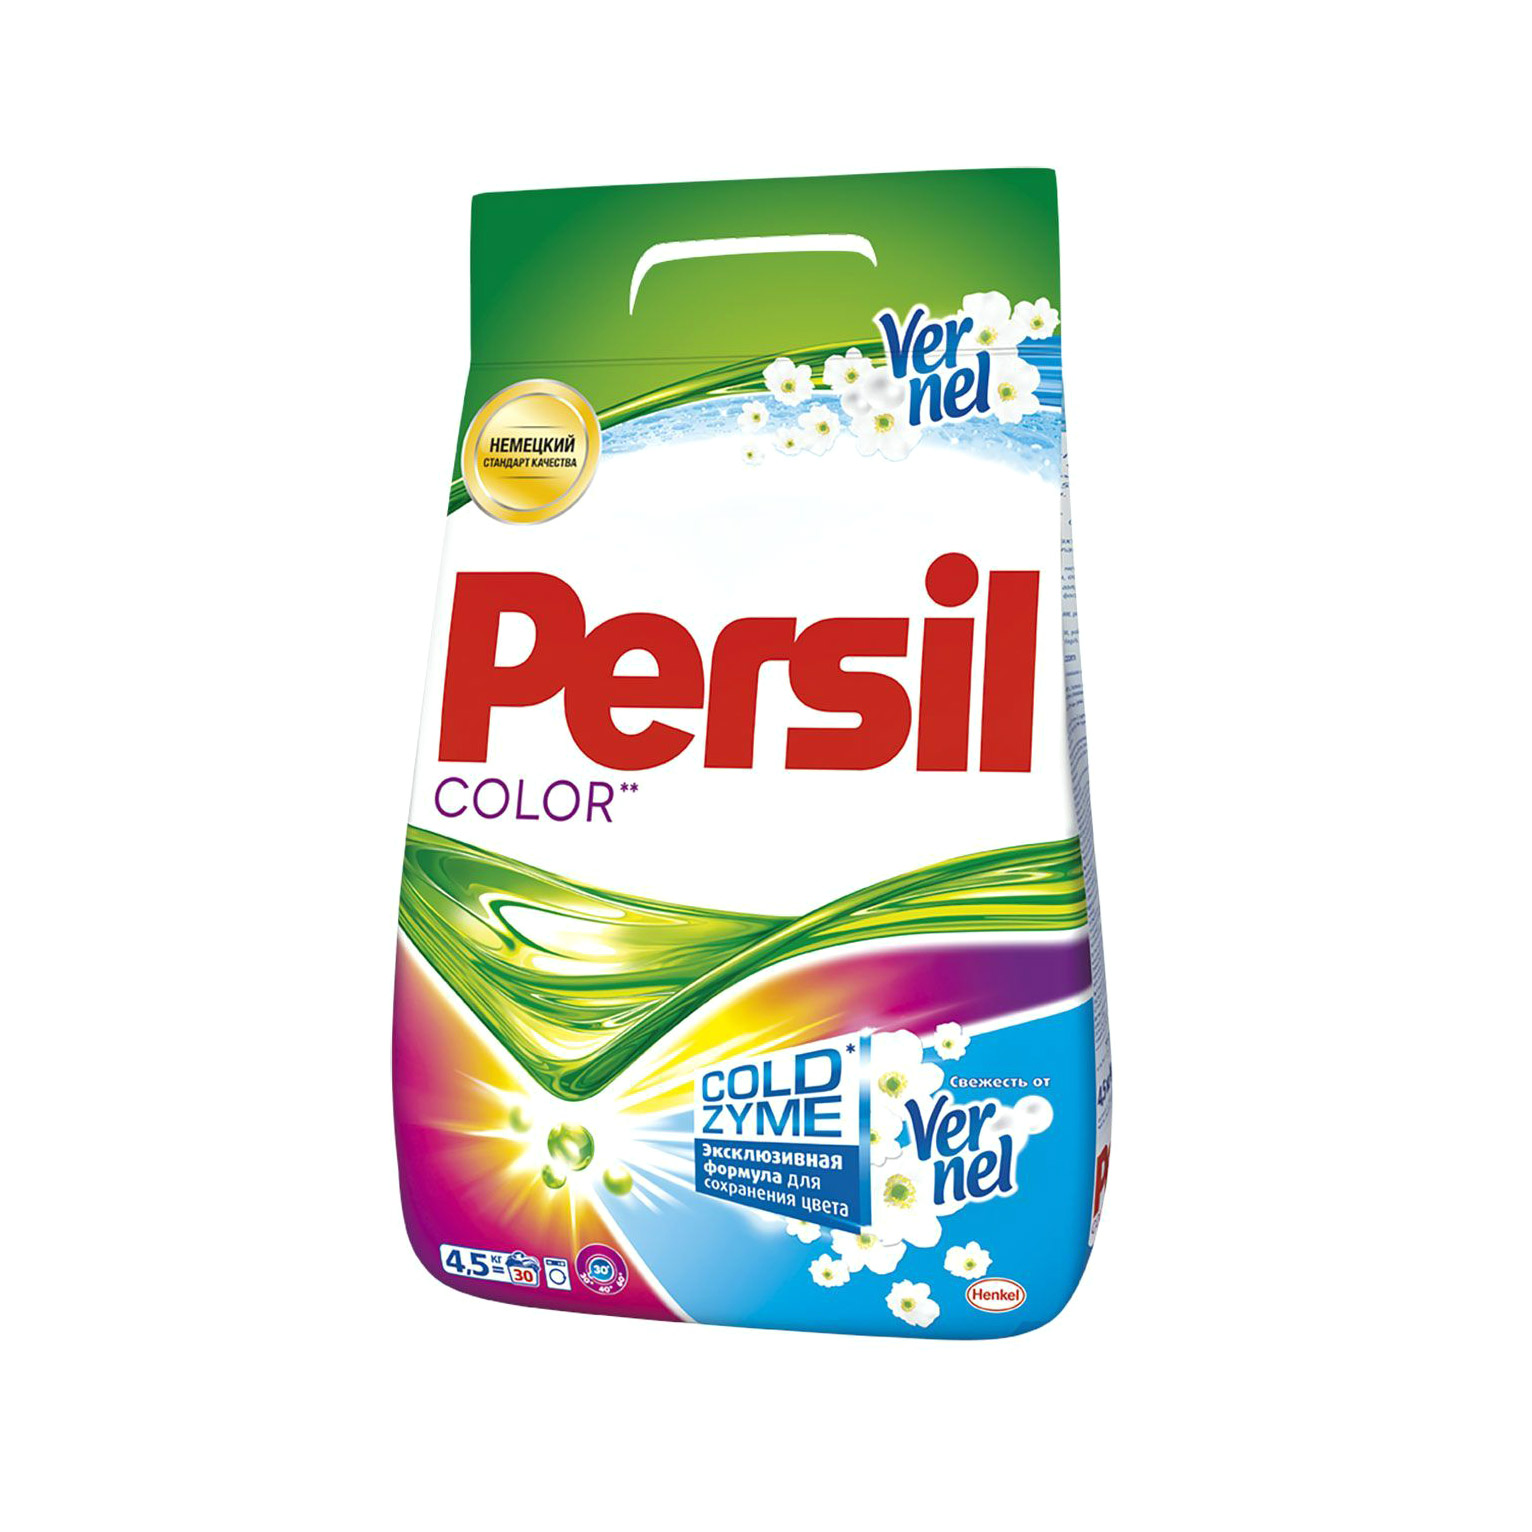 Стиральный порошок Persil Color свежесть Vernel 4.5 кг стиральный порошок tide автомат color 20 стирок 3 кг